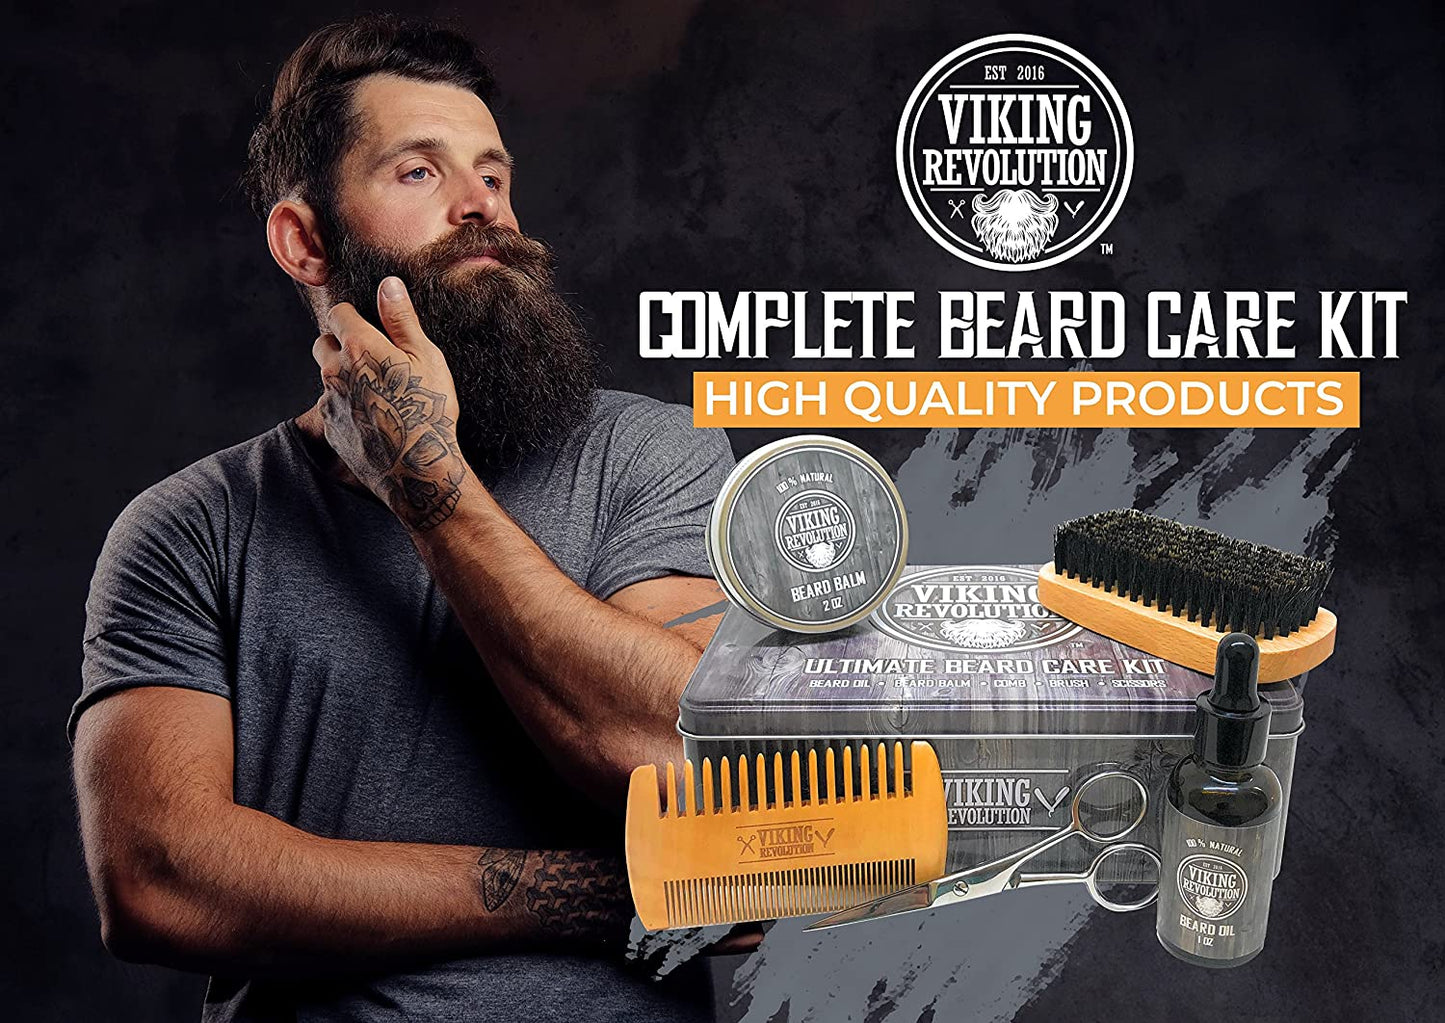 Beard Care Kit for Men - Ultimate Beard Grooming Kit Includes 100% Boar Men’S Beard Brush, Wooden Beard Comb, Beard Balm, Beard Oil, Beard & Mustache Scissors in a Metal Box